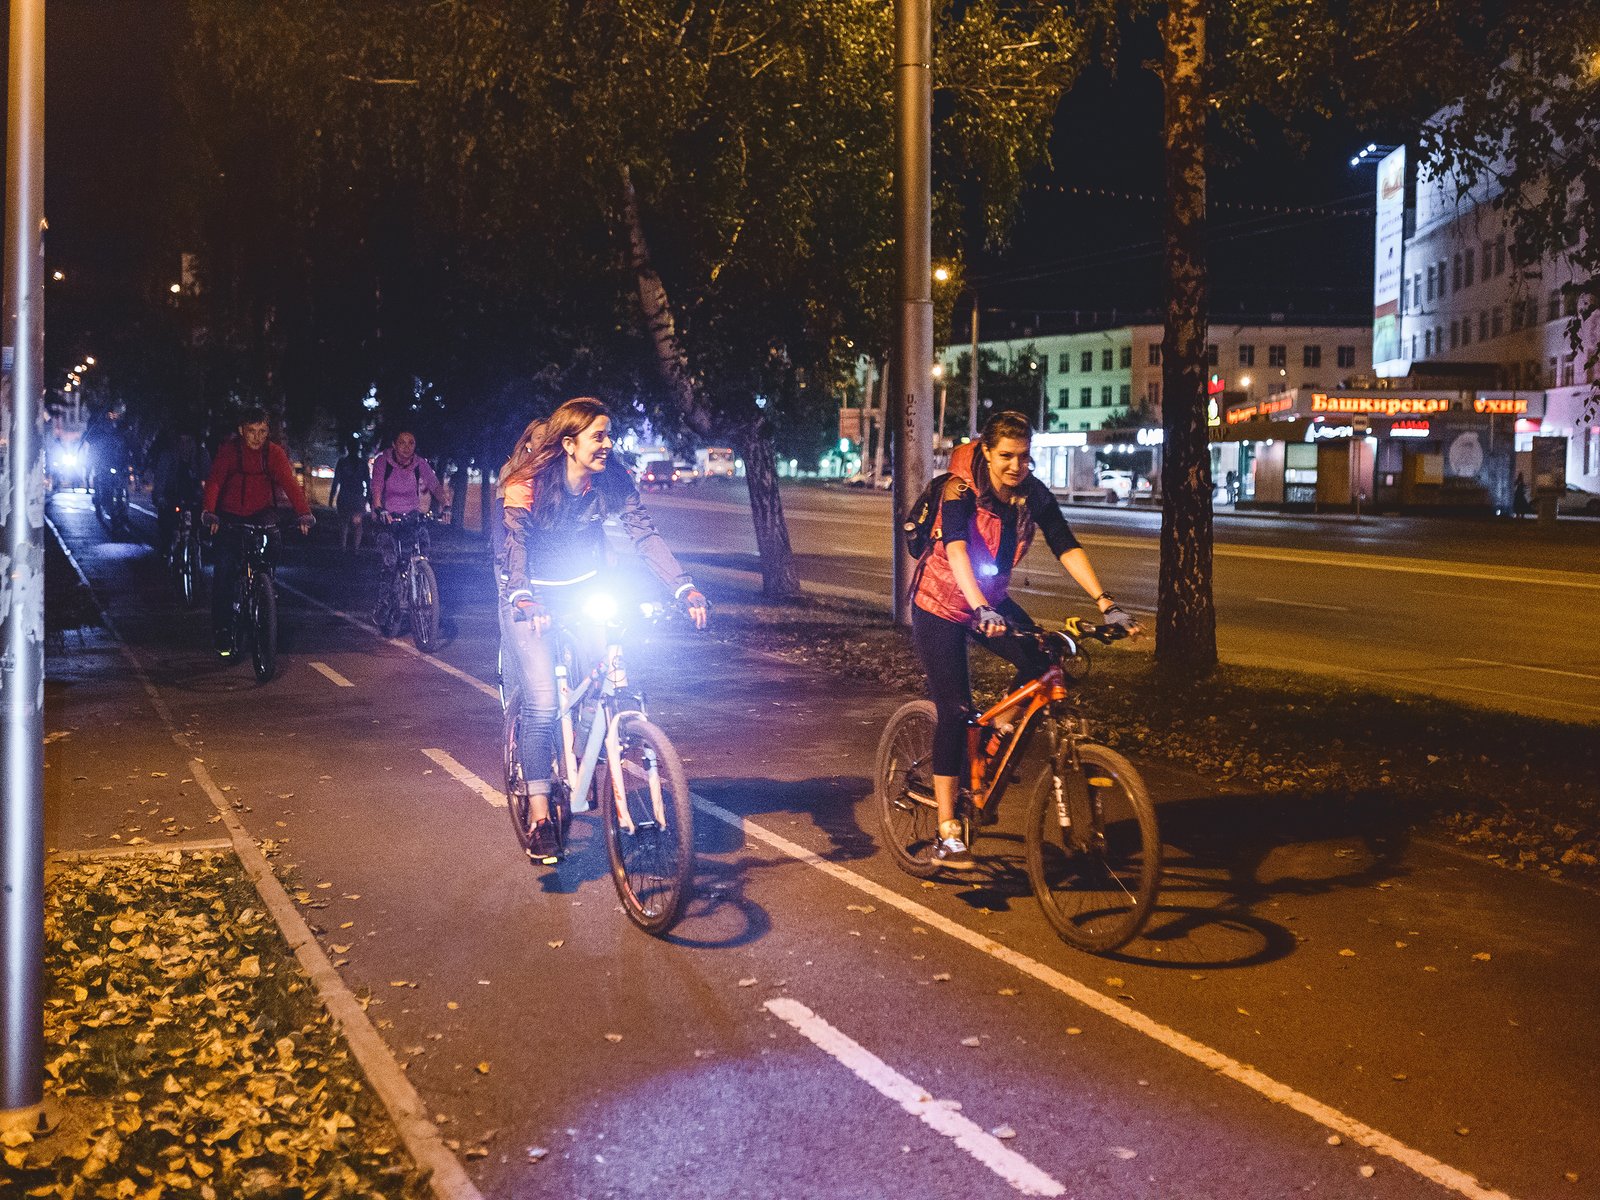 Warentest prüft Fahrradbeleuchtung - die besten Lampen für Ihr Fahrrad